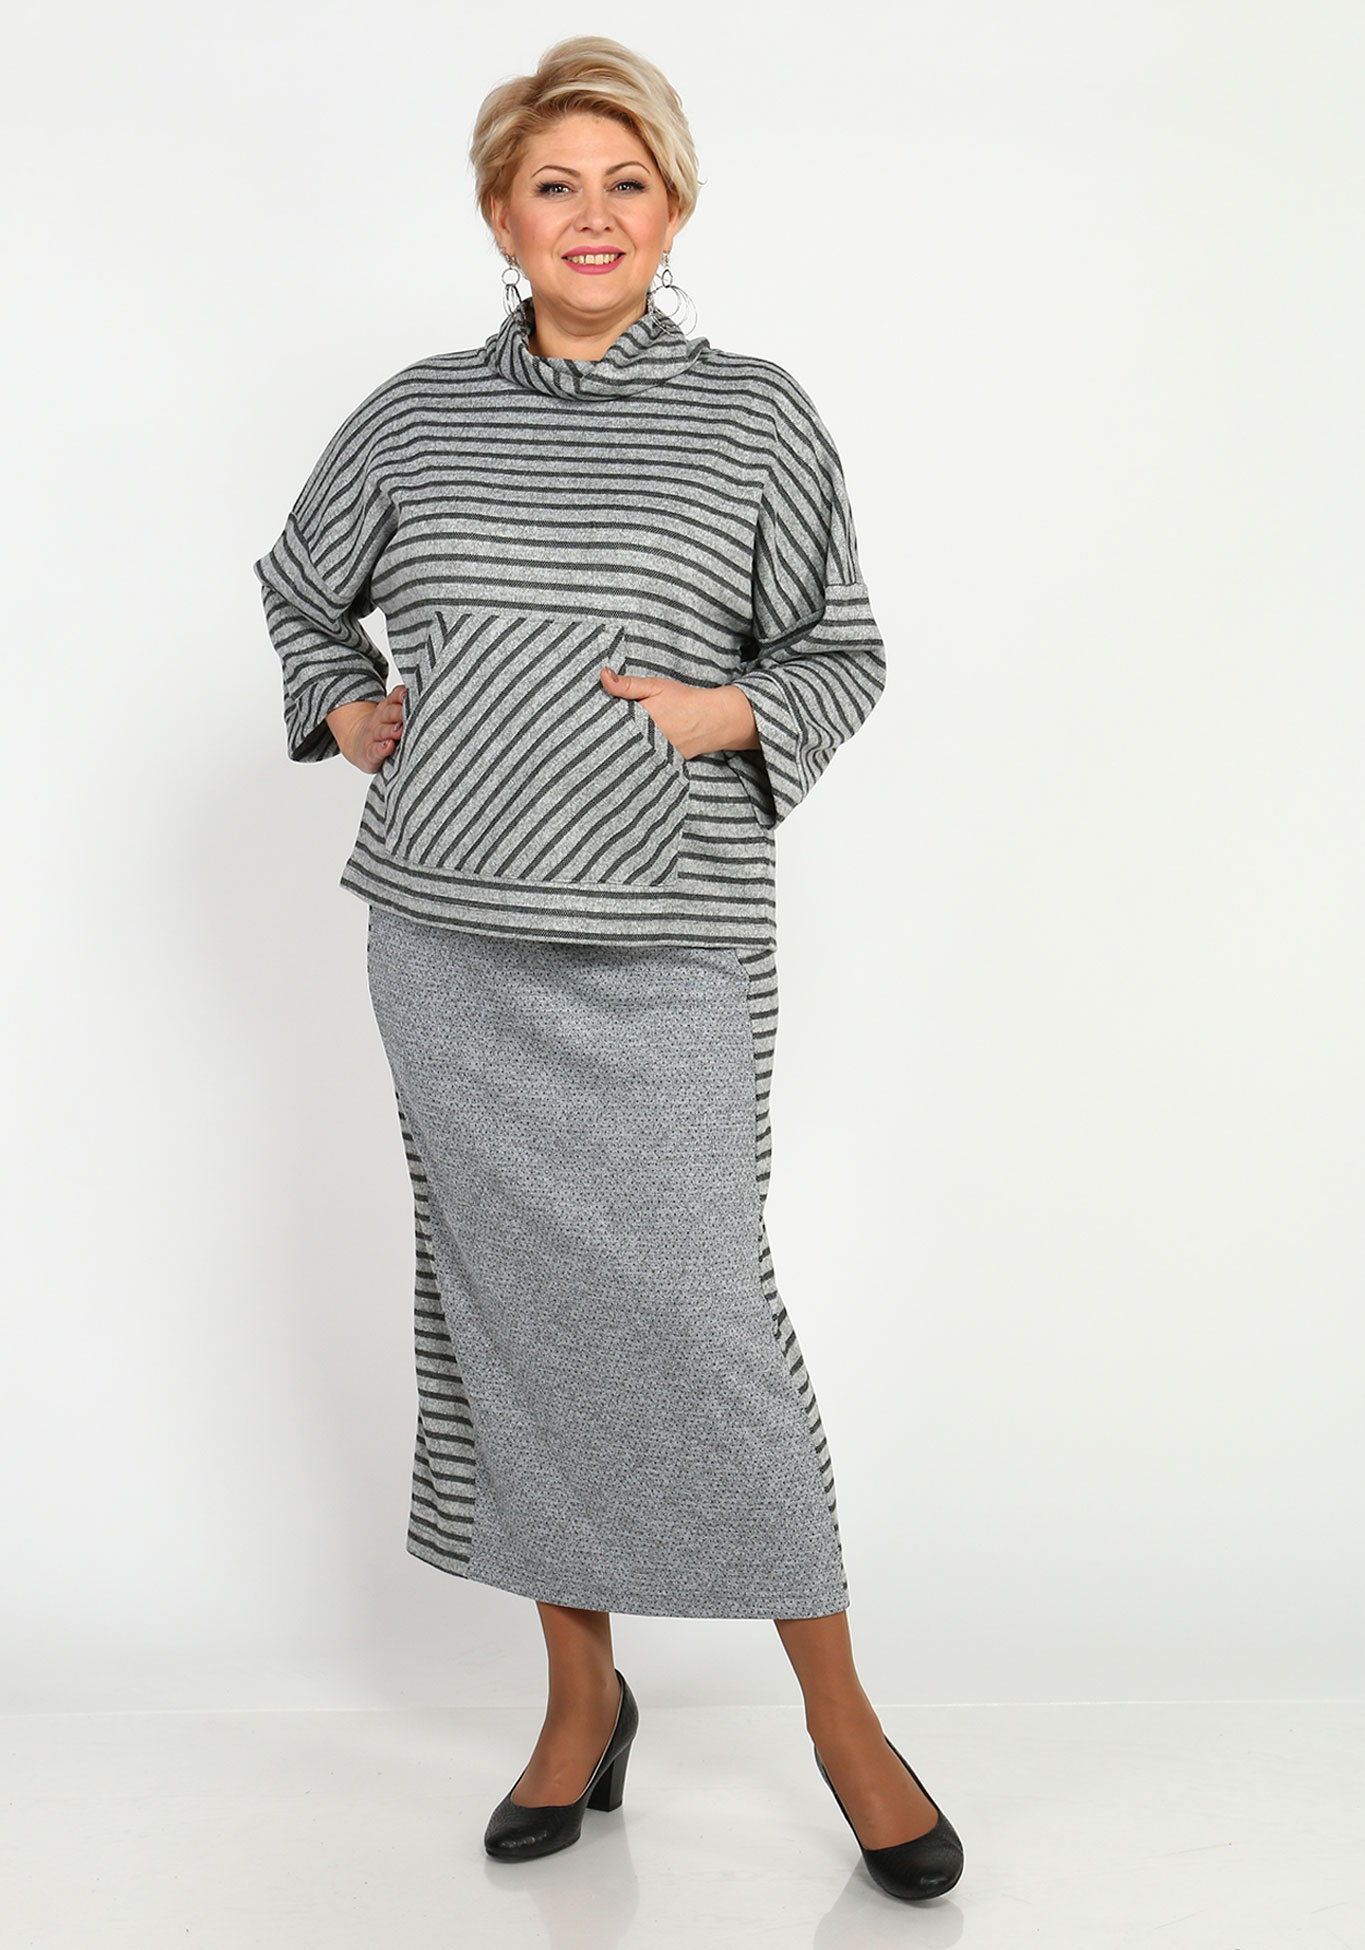 Комплект: юбка и джемпер с воротником Синель, размер 46, цвет серый - фото 1